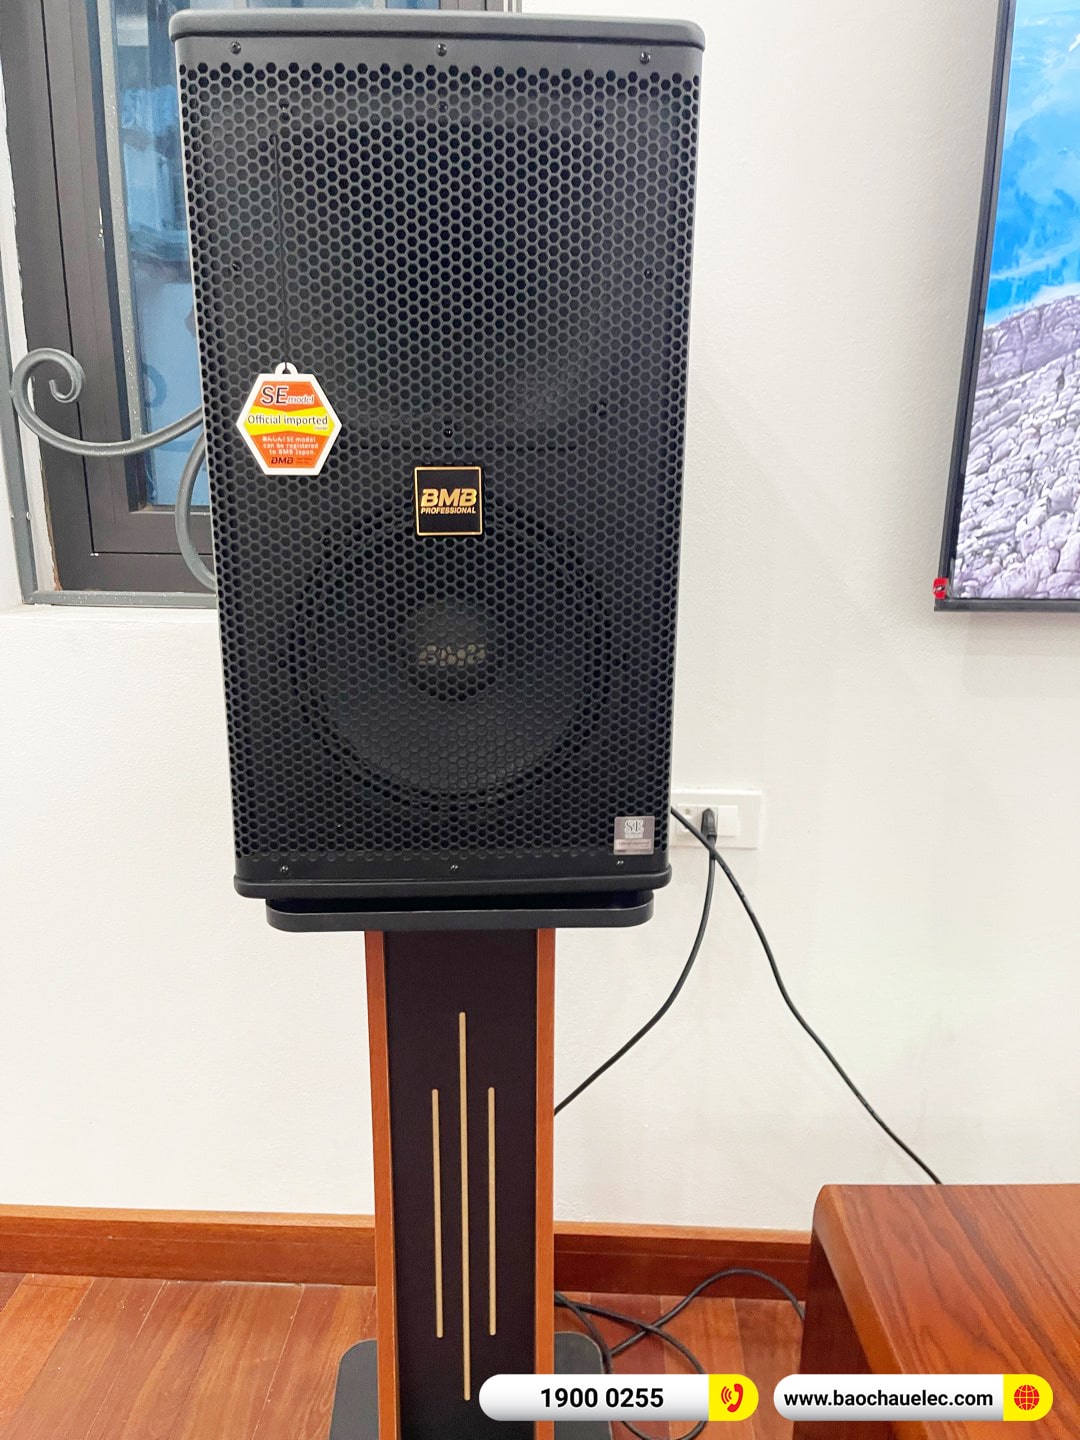 Lắp đặt dàn karaoke BMB gần 40tr cho anh Nguyên tại Hà Nội (BMB 1210SE, BDA-X33, SW512, Toprhyme M300)